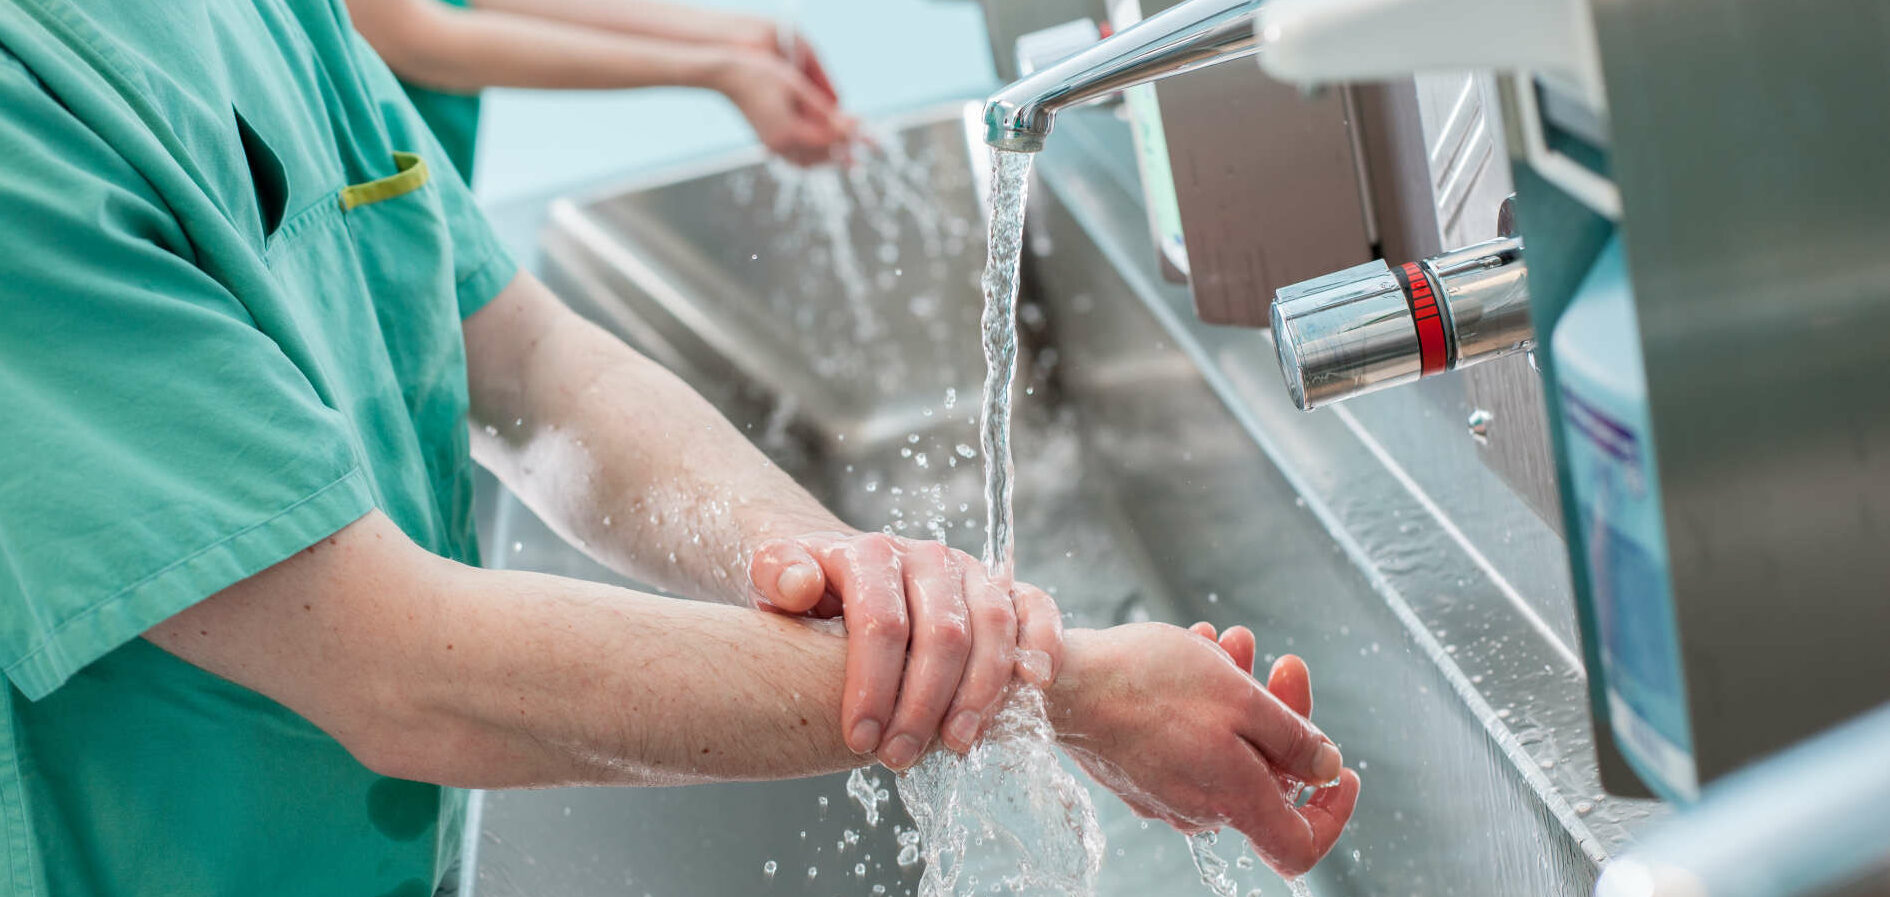 Die richtige Händehygiene ist extrem wichtig, um Krankenhauskeime zu vermeiden.